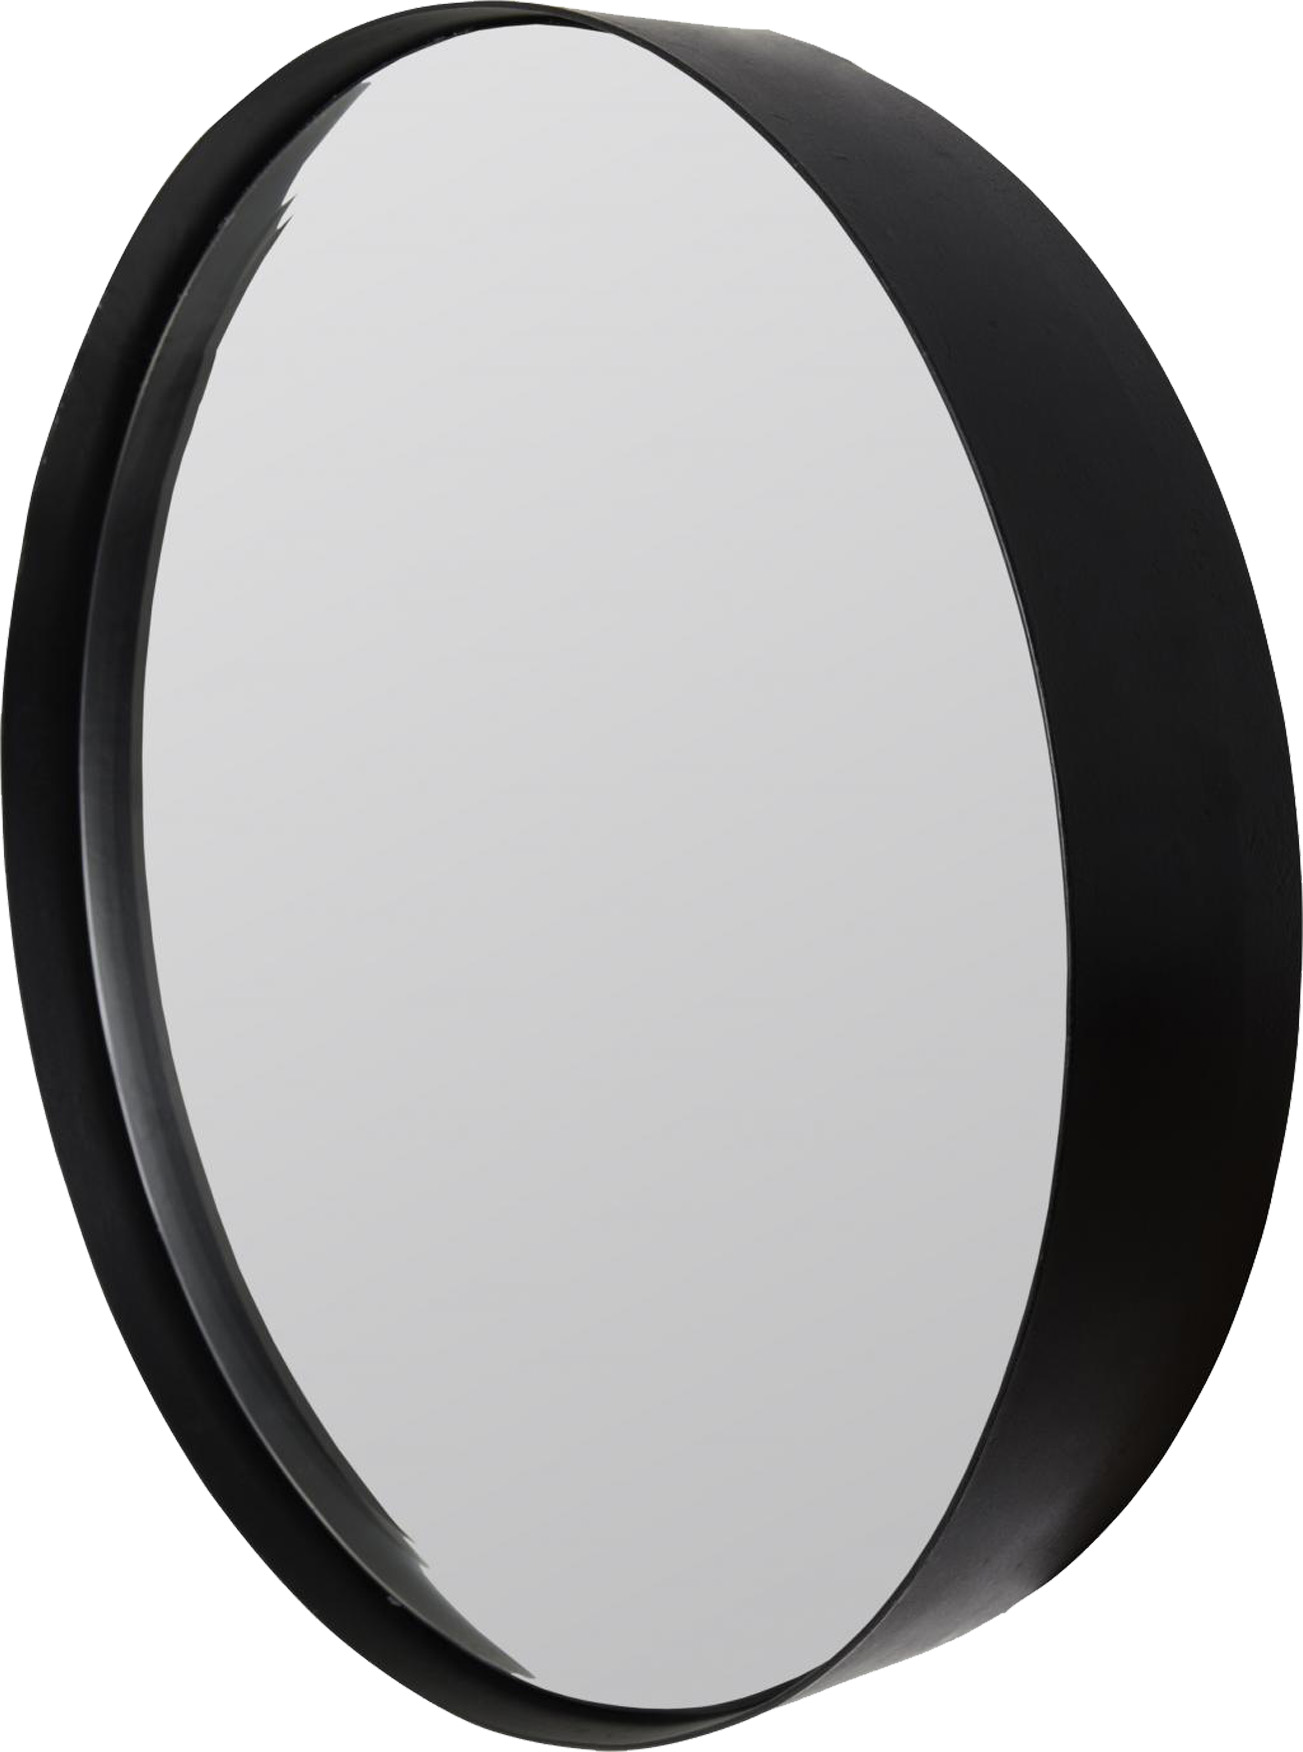 Spiegel ROUND S | Stahl matt schwarz 3 mm | rund ca. 30 cm